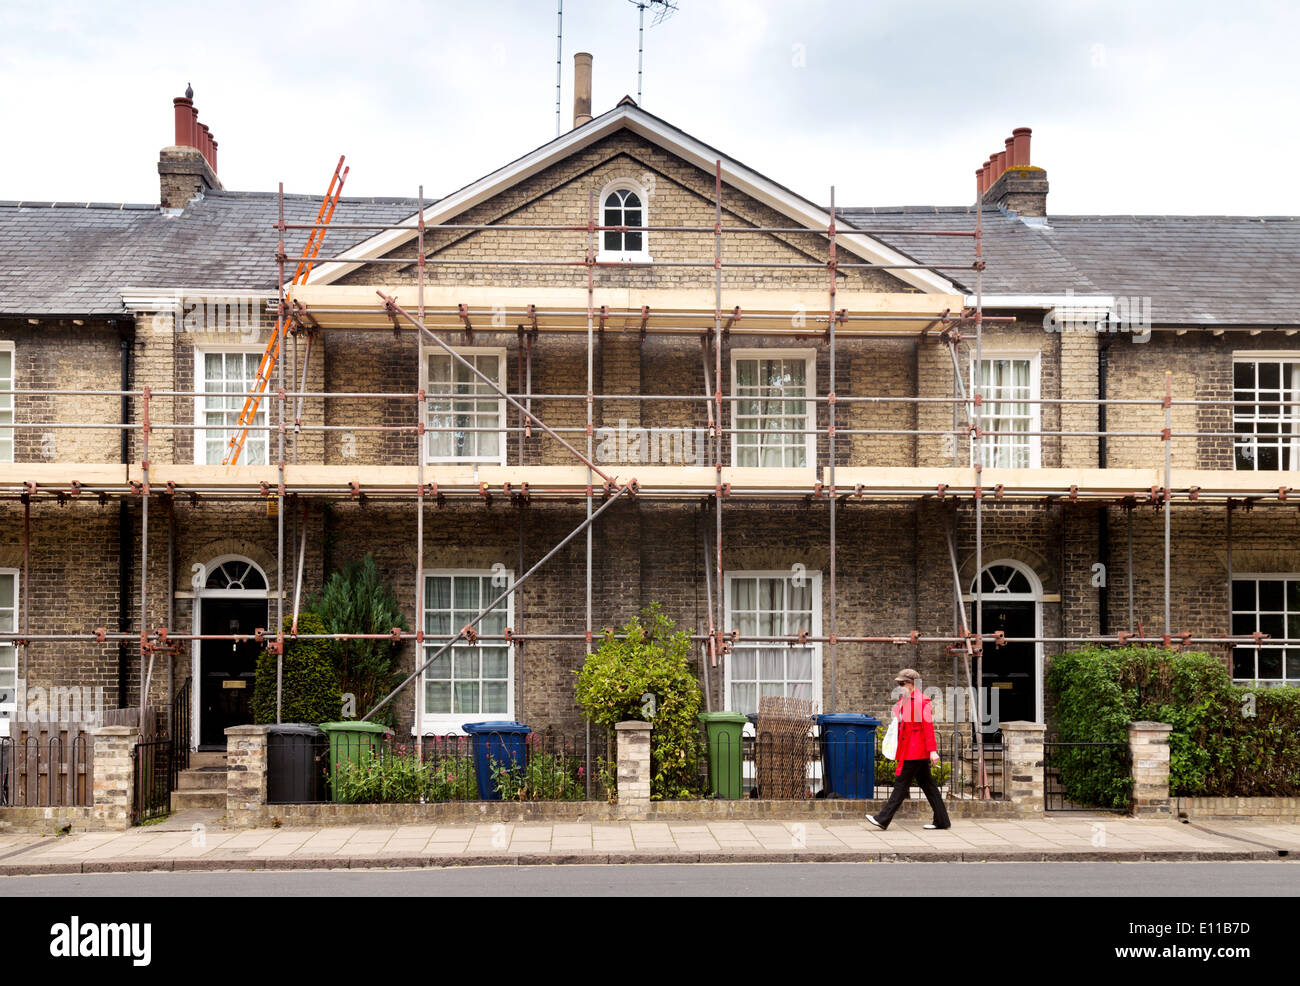 Una hilera de casas adosadas con andamiaje para reparaciones / renovación, Cambridge, Inglaterra Foto de stock